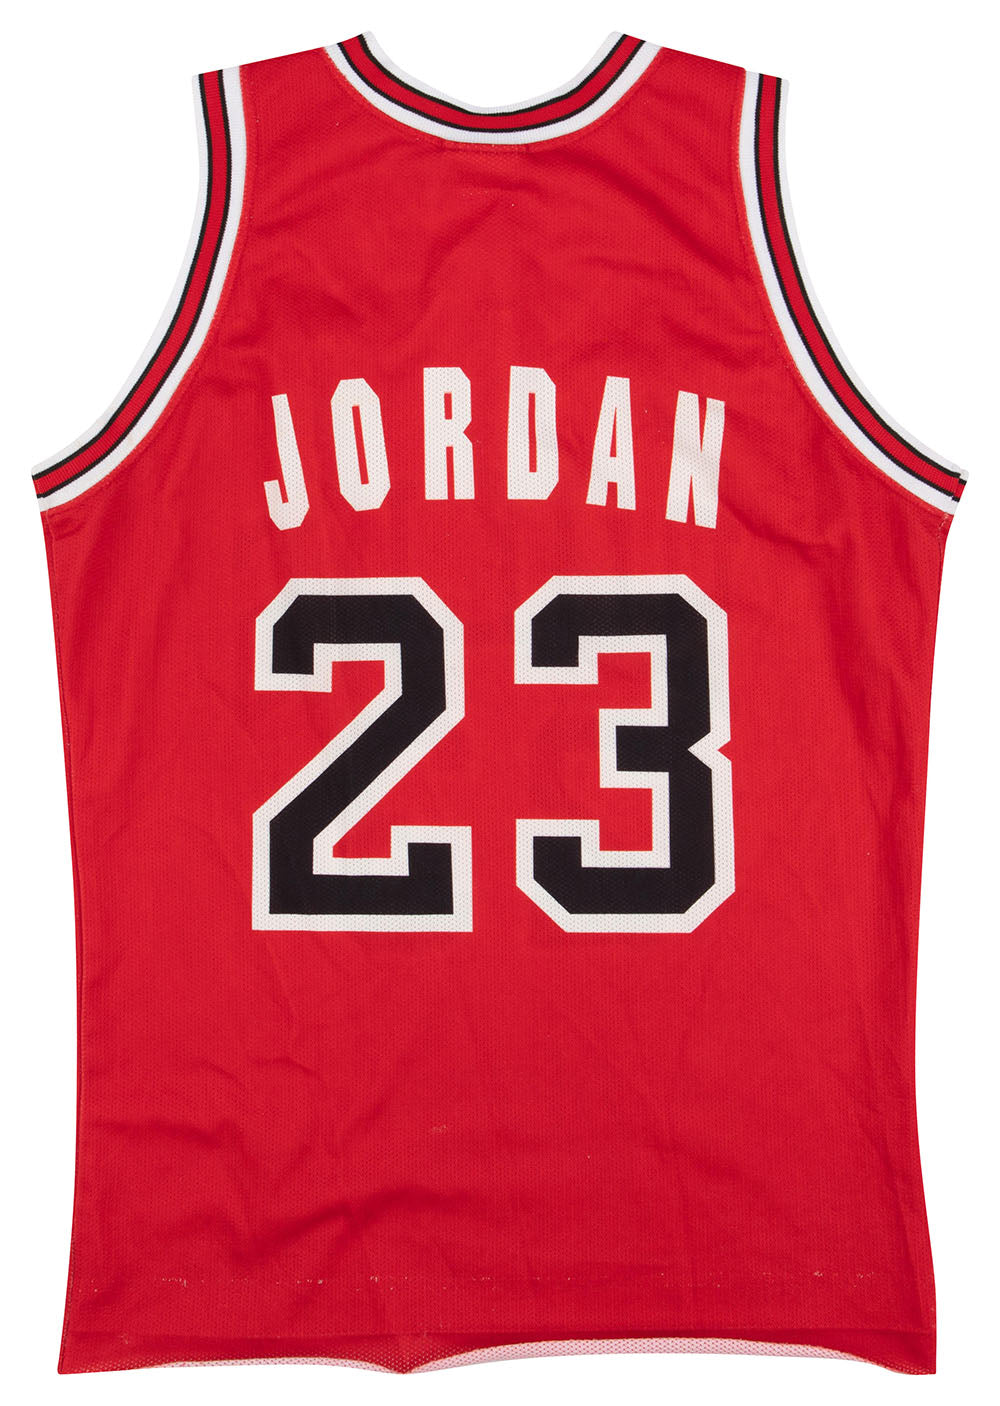 MJ #23 Michael Jordan Chicago Bulls Jersey Black & White